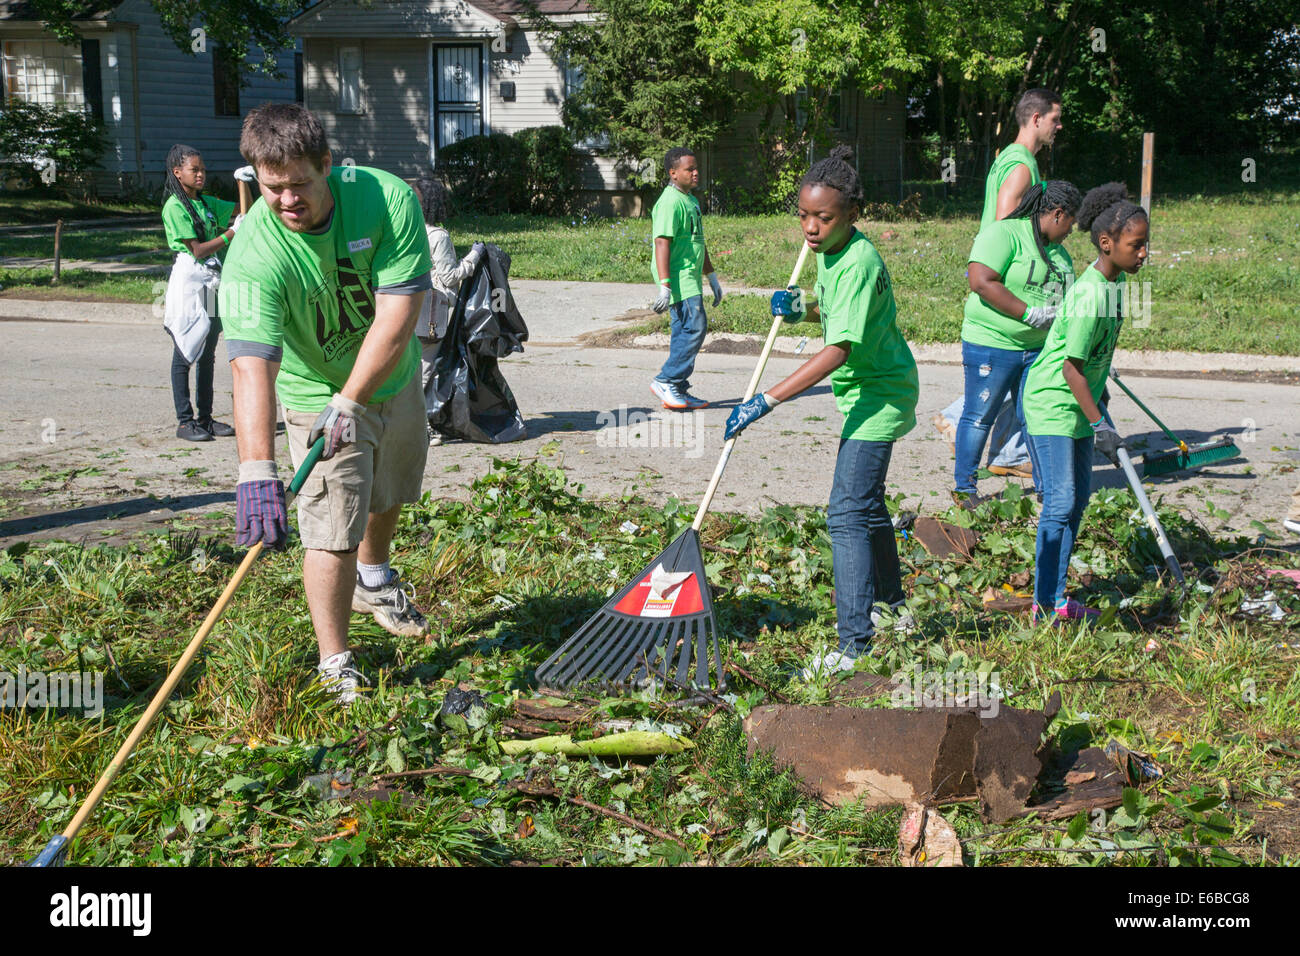 Detroit, Michigan - Bénévoles nettoyer un quartier défavorisé pendant une semaine de l'initiative d'amélioration de la communauté. Banque D'Images